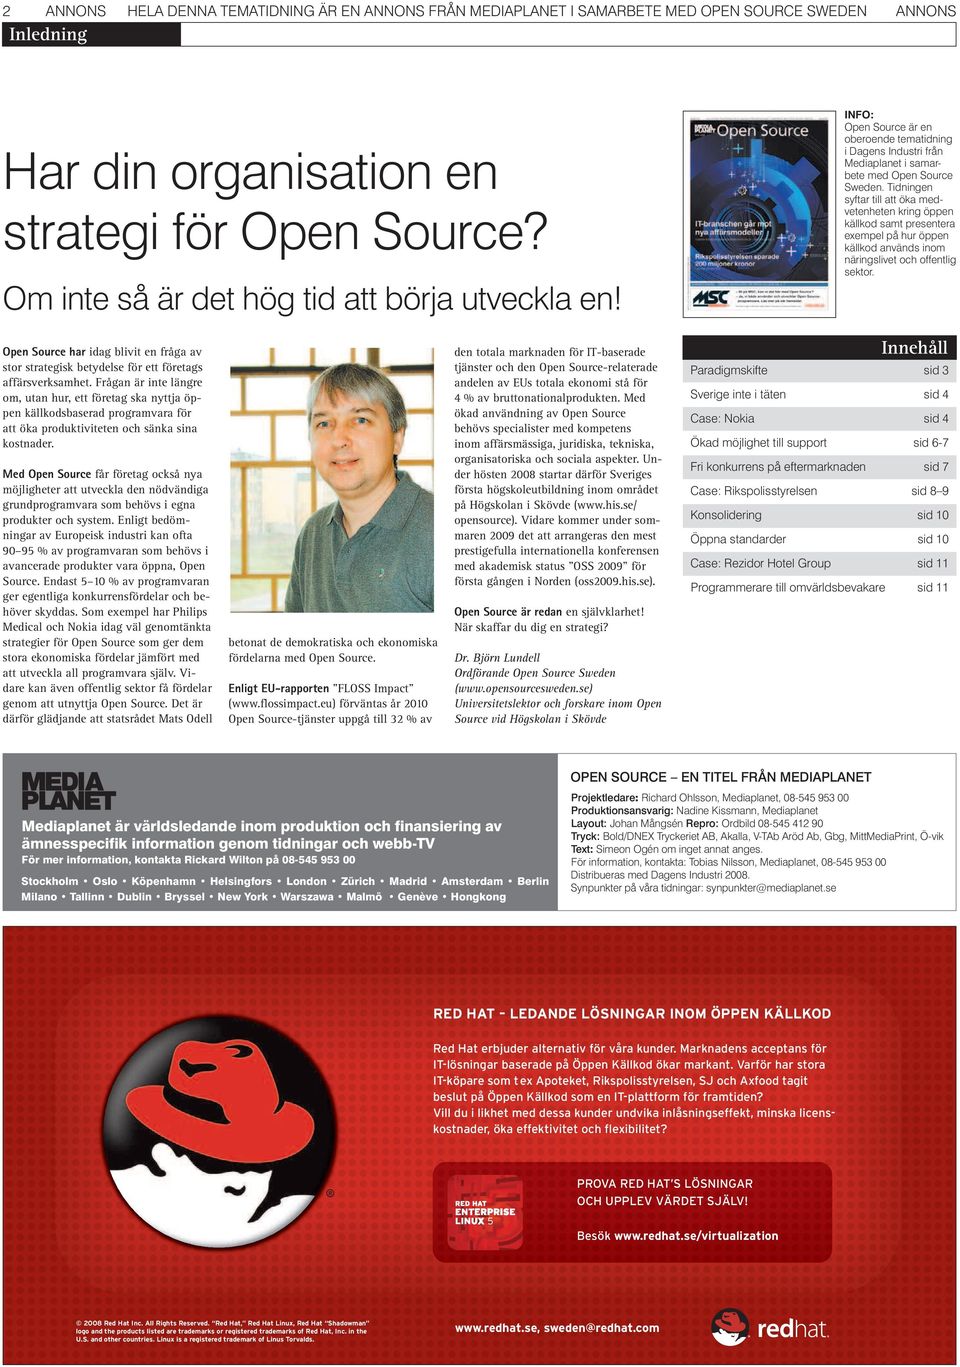 Har din organisation en strategi för Open Source? Om inte så är det hög tid att börja utveckla en! Open Source har idag blivit en fråga av stor strategisk betydelse för ett företags affärsverksamhet.